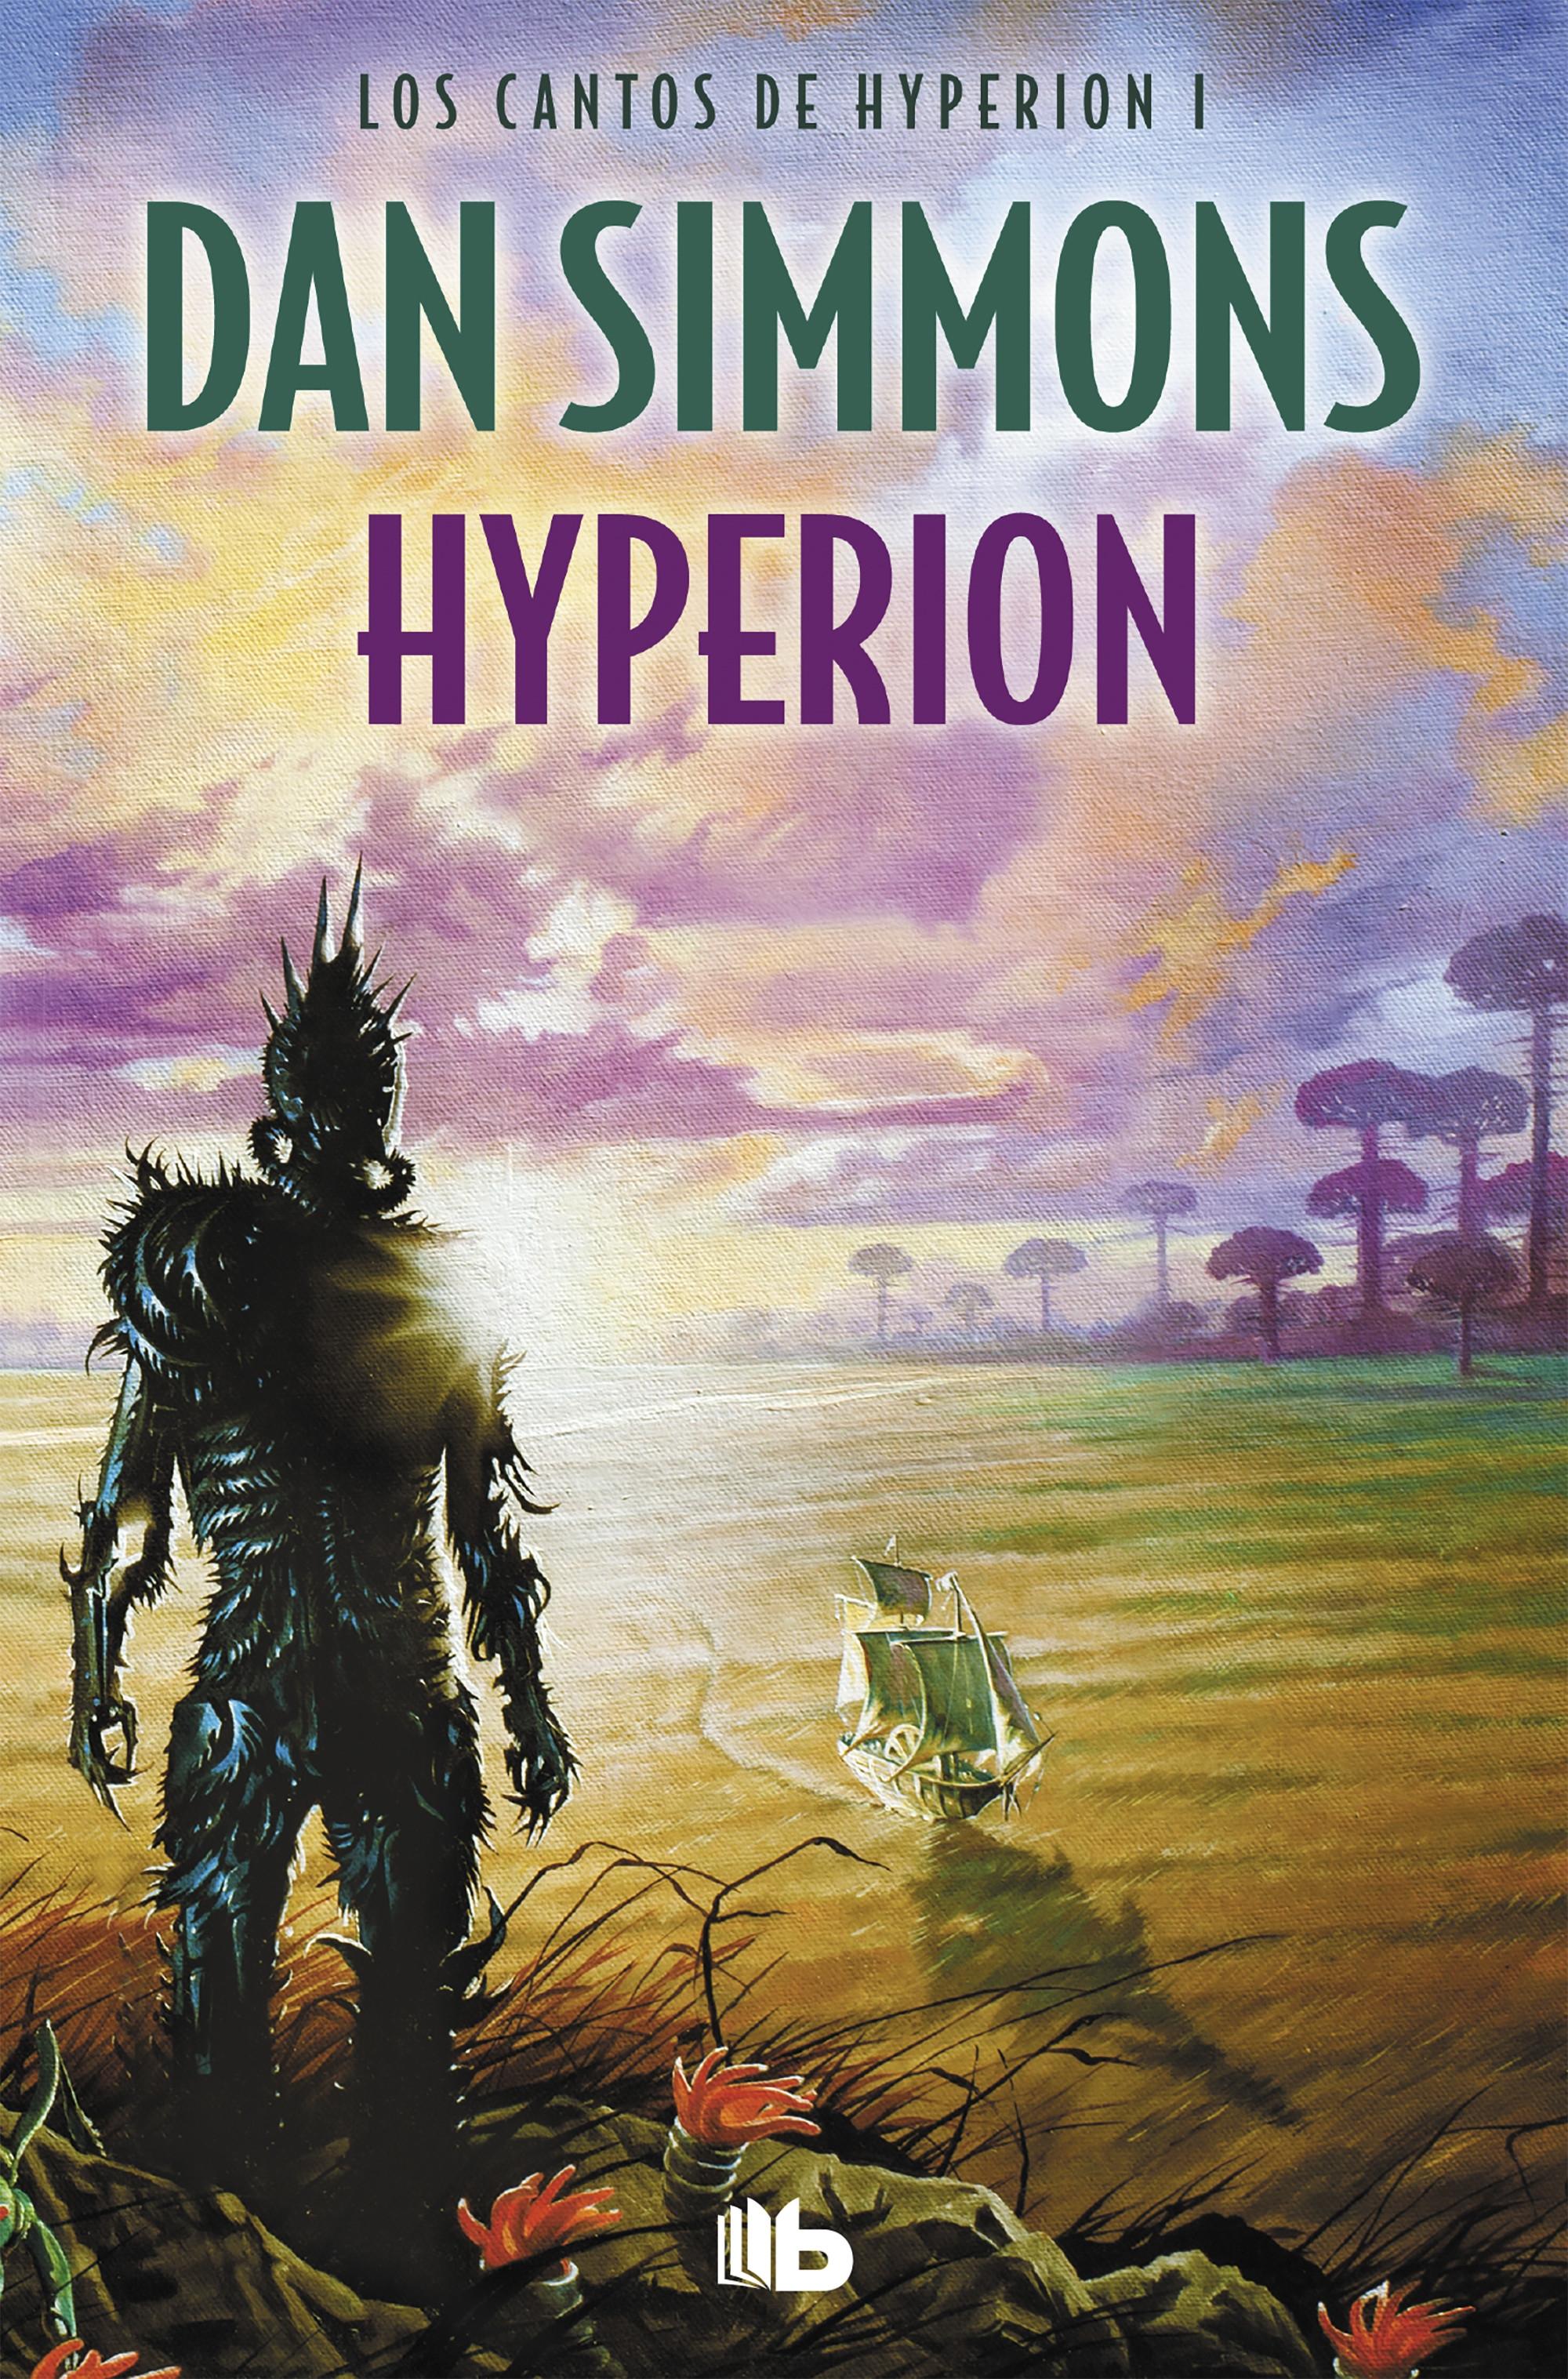 Hyperion "(Los cantos de Hyperion - 1)"